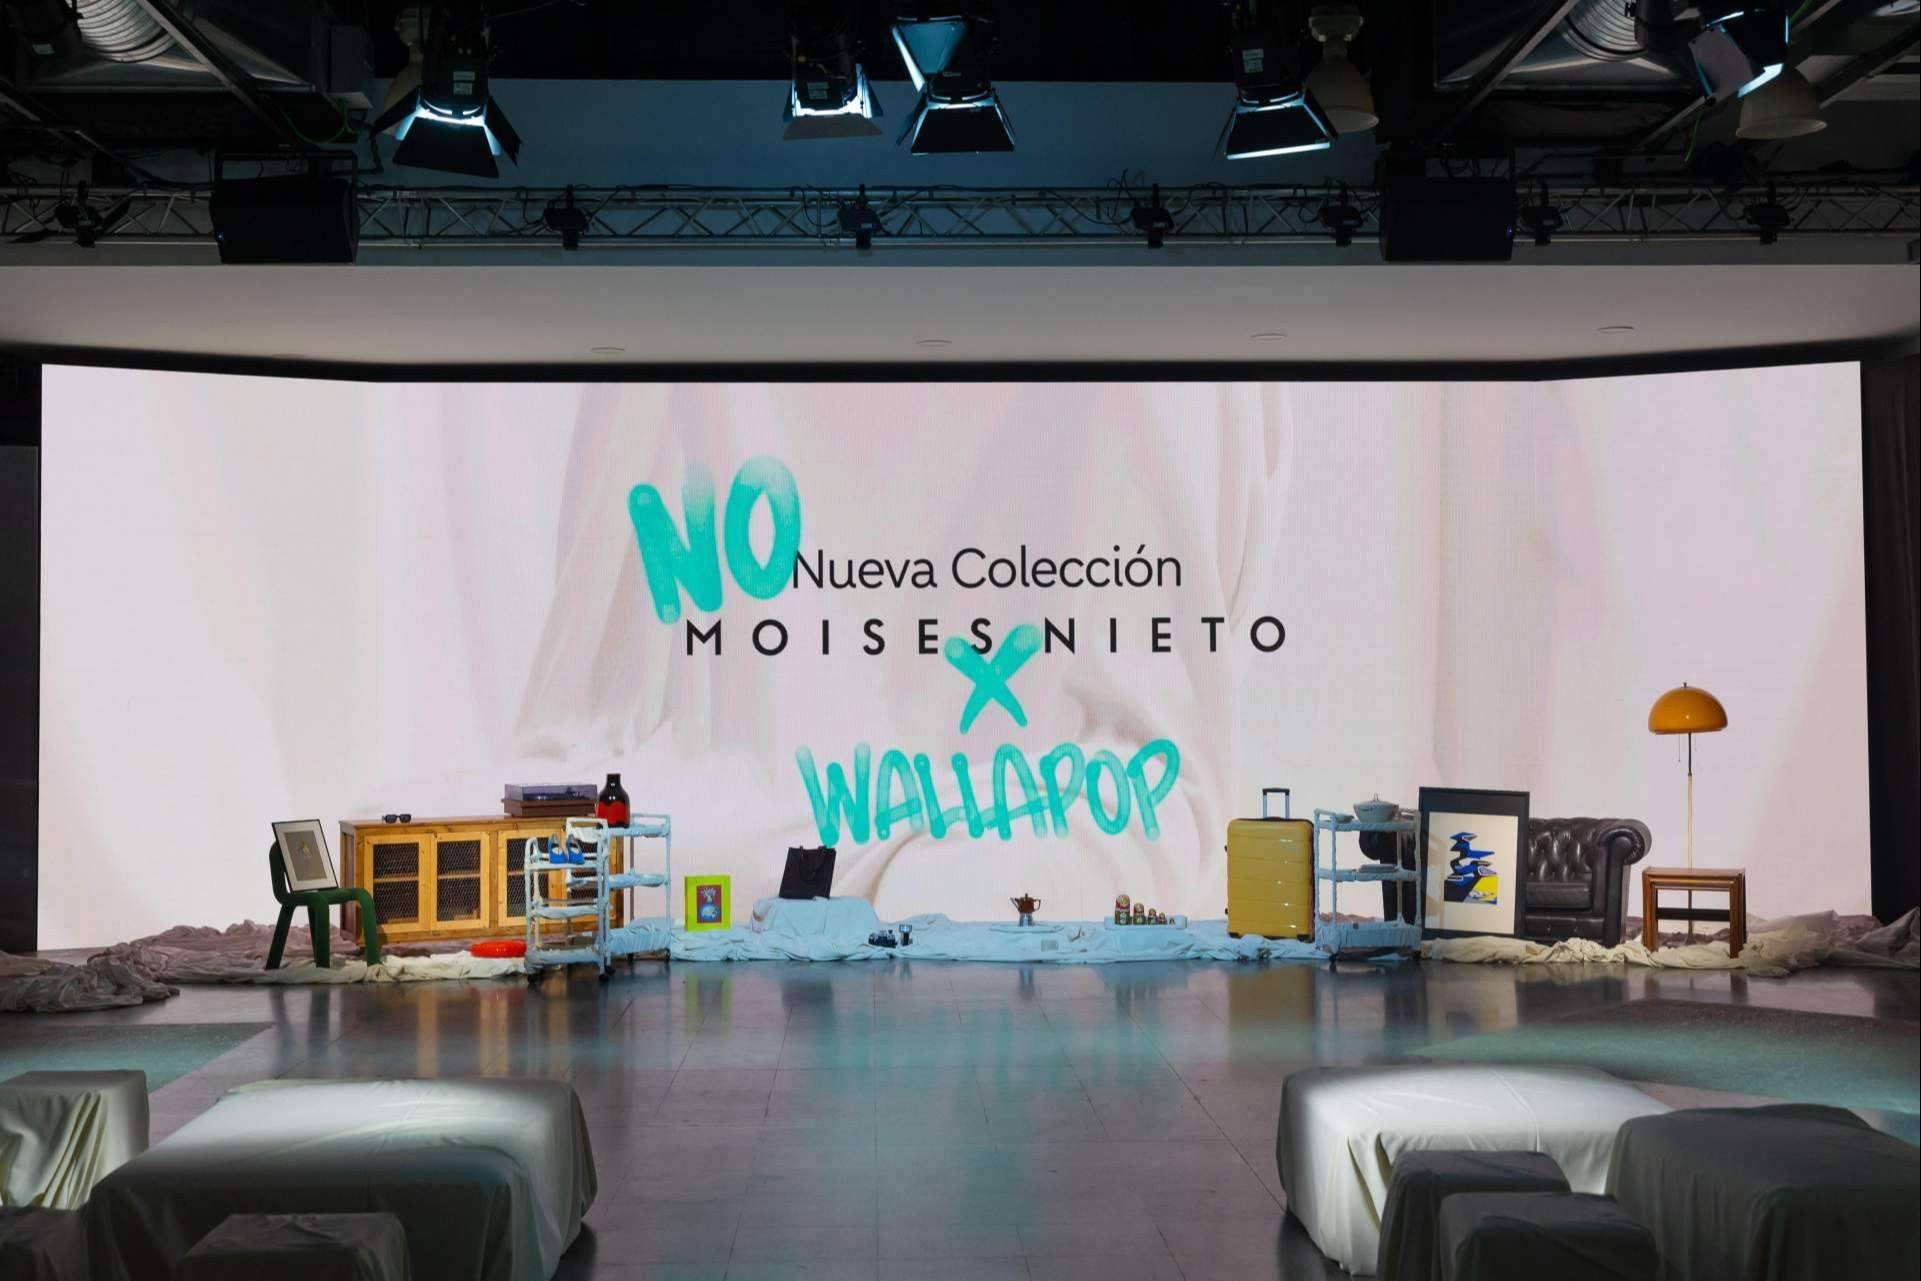  Se ha creado la primera NO Nueva Colección lifestyle reutilizada en España en colaboración con Wallapop 